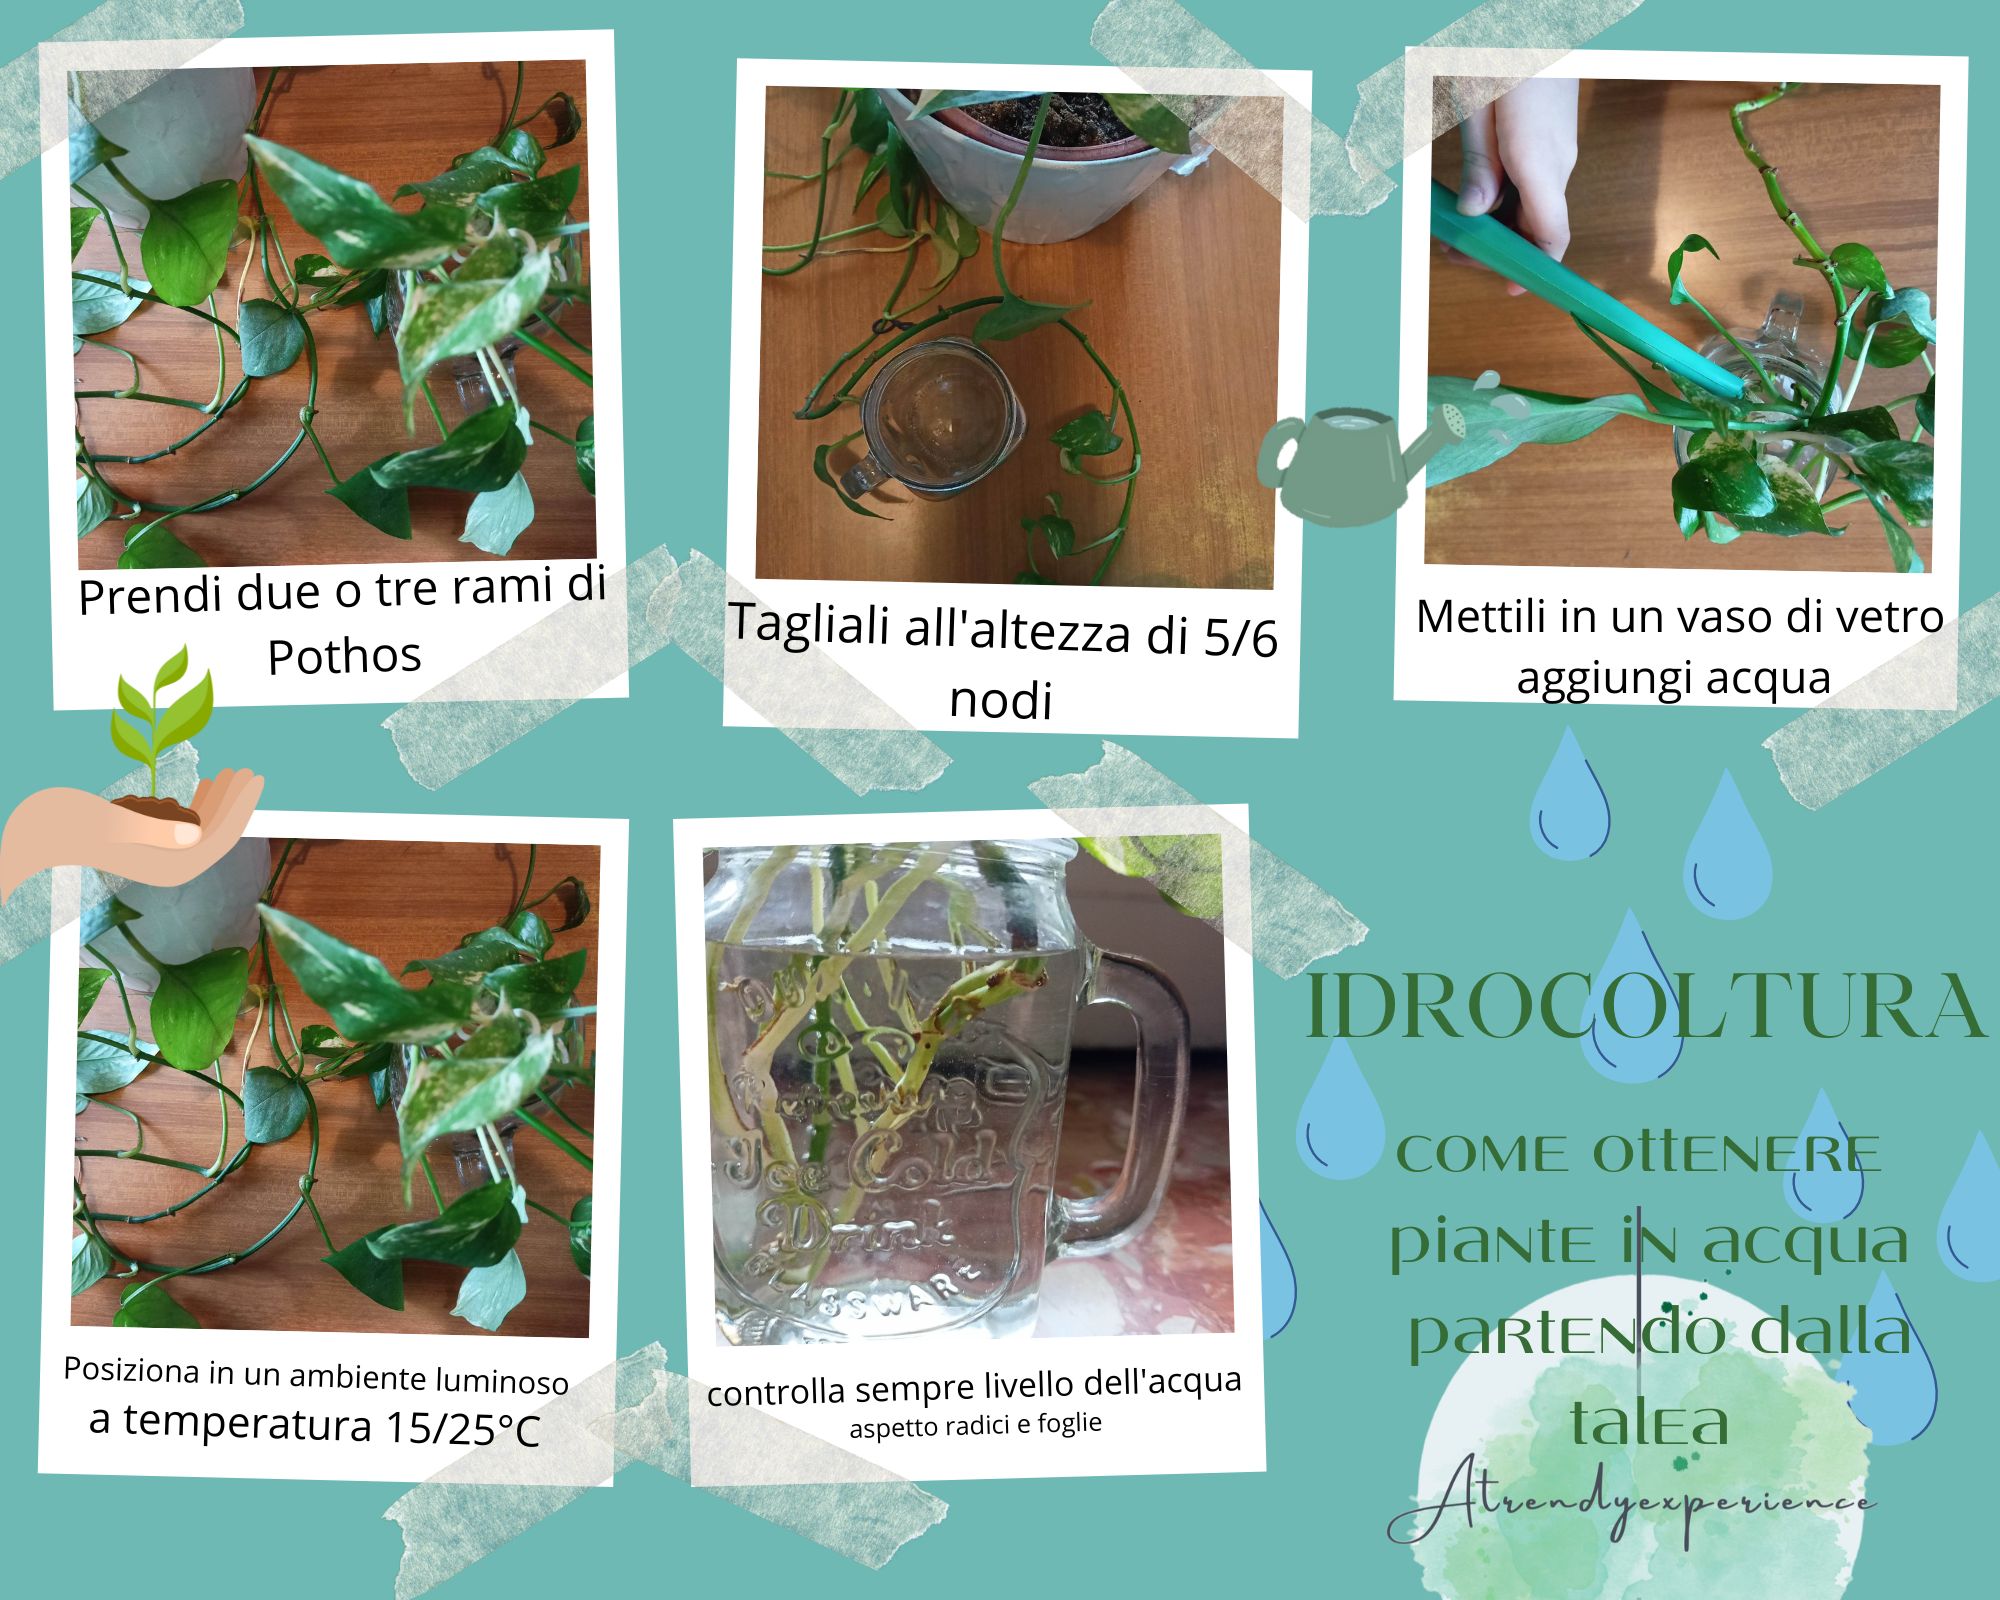 drocoltura: come ottenere piante in acqua partendo dalla talea